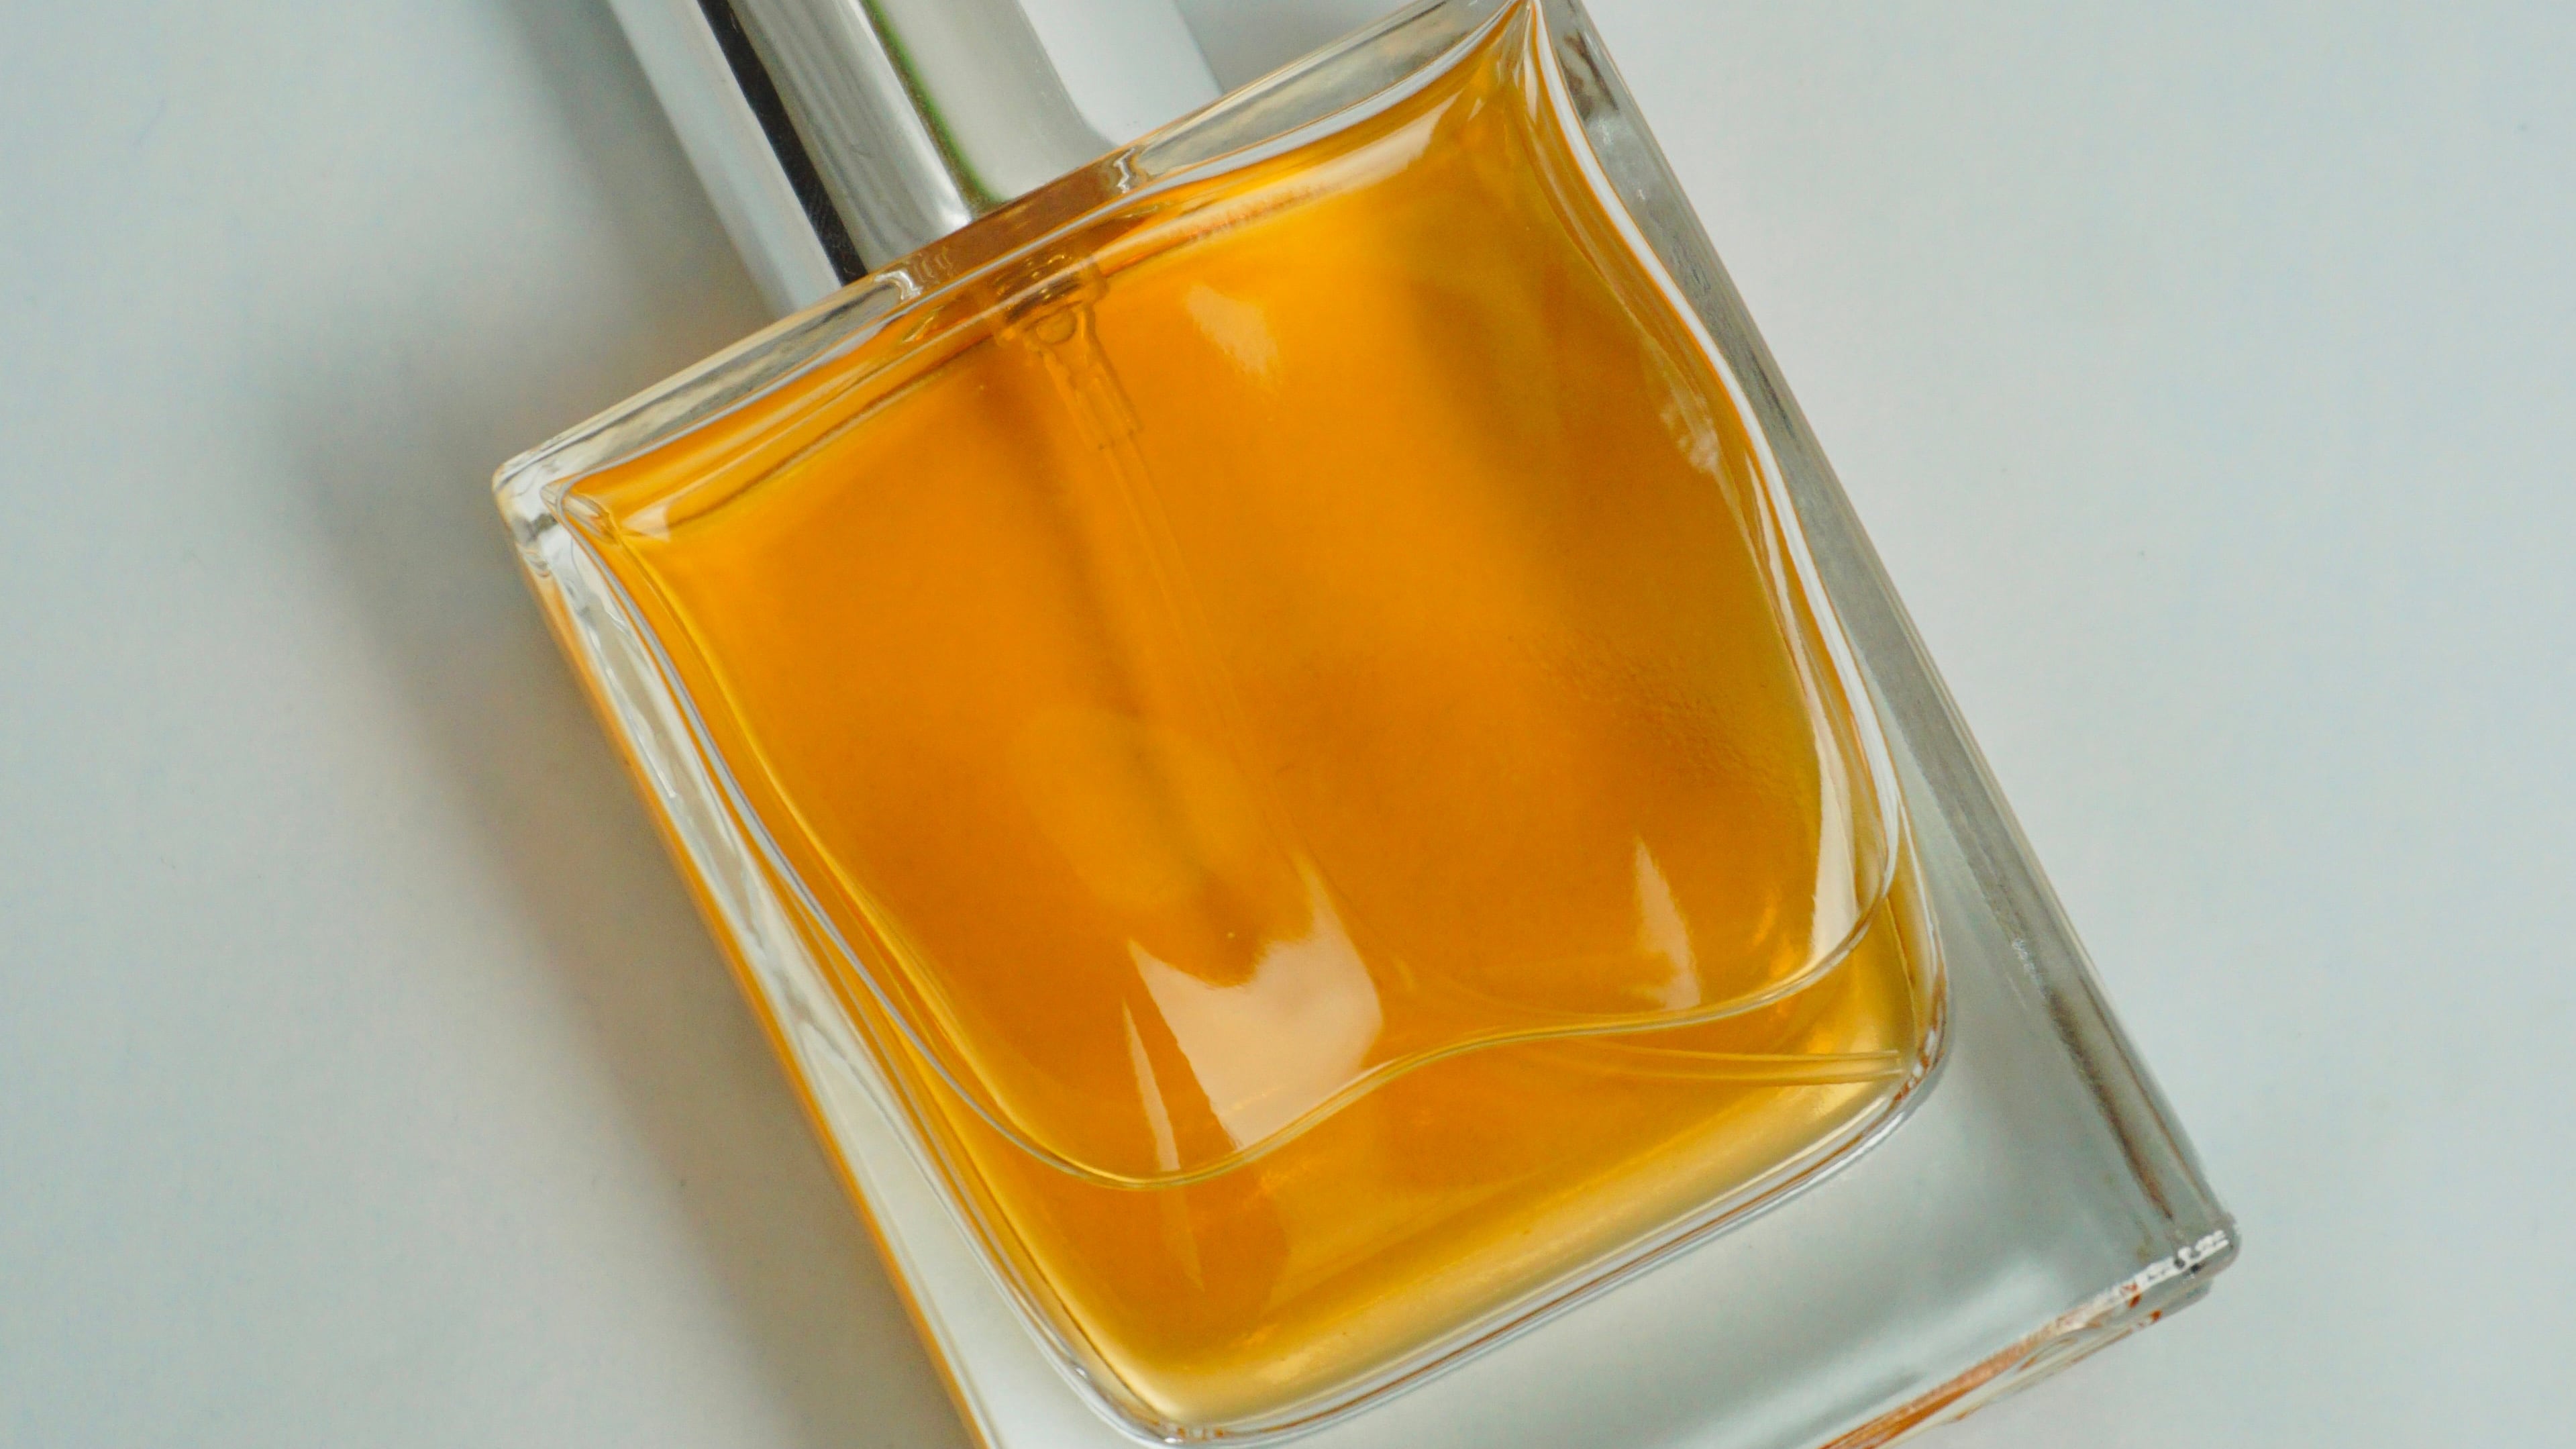 Frasco de perfume com líquido laranja